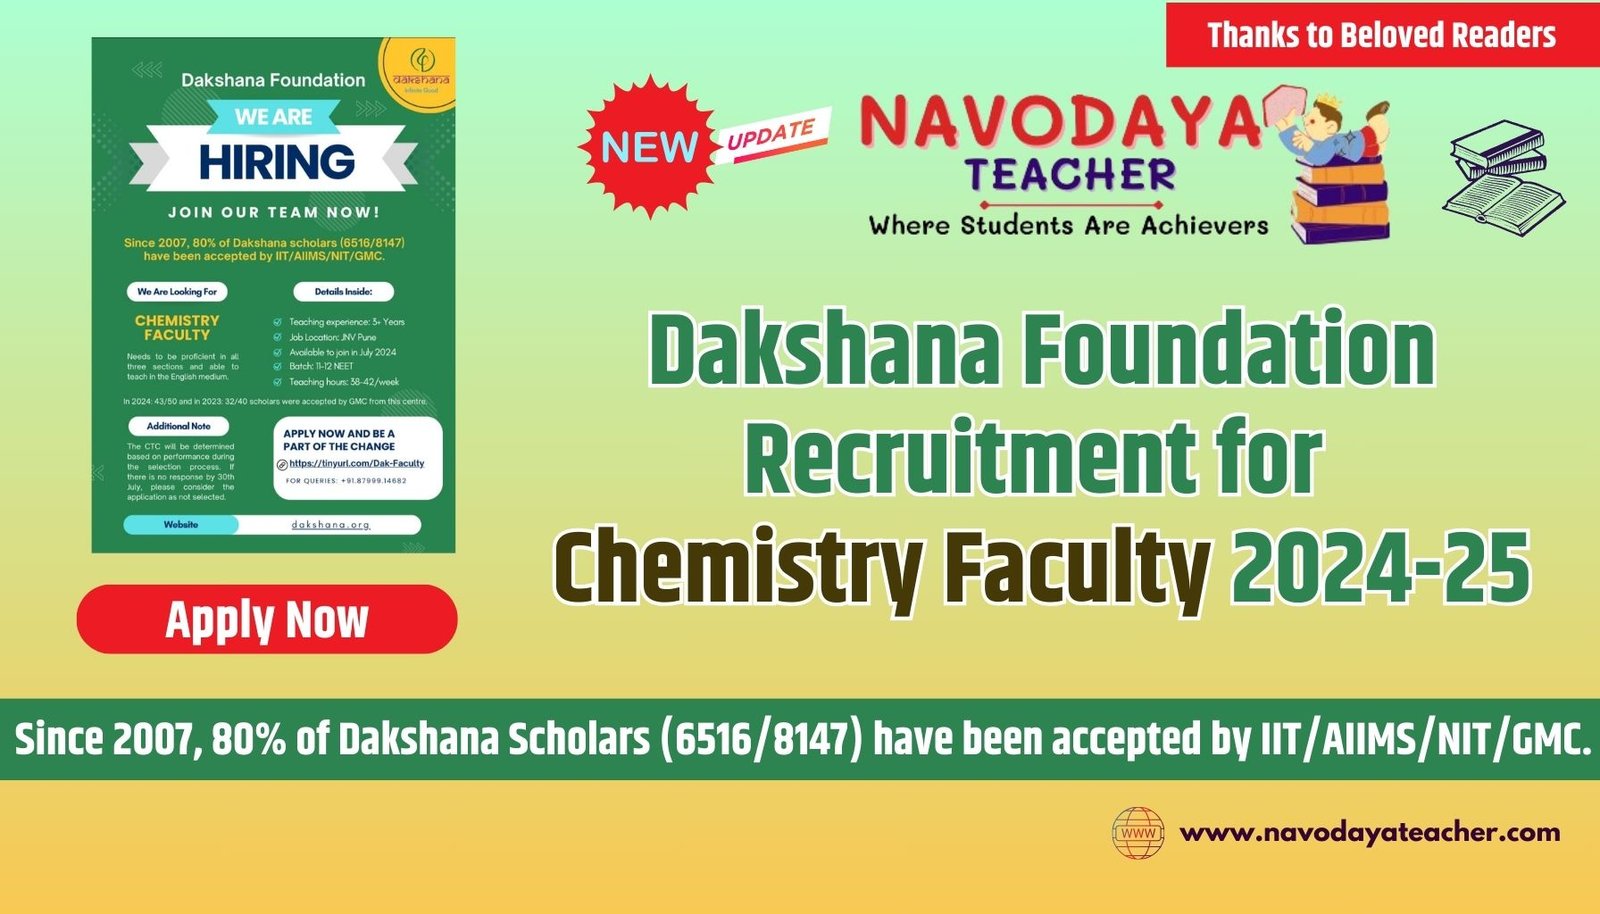 Dakshana Foundation Recruitment for Chemistry Faculty 2024-25